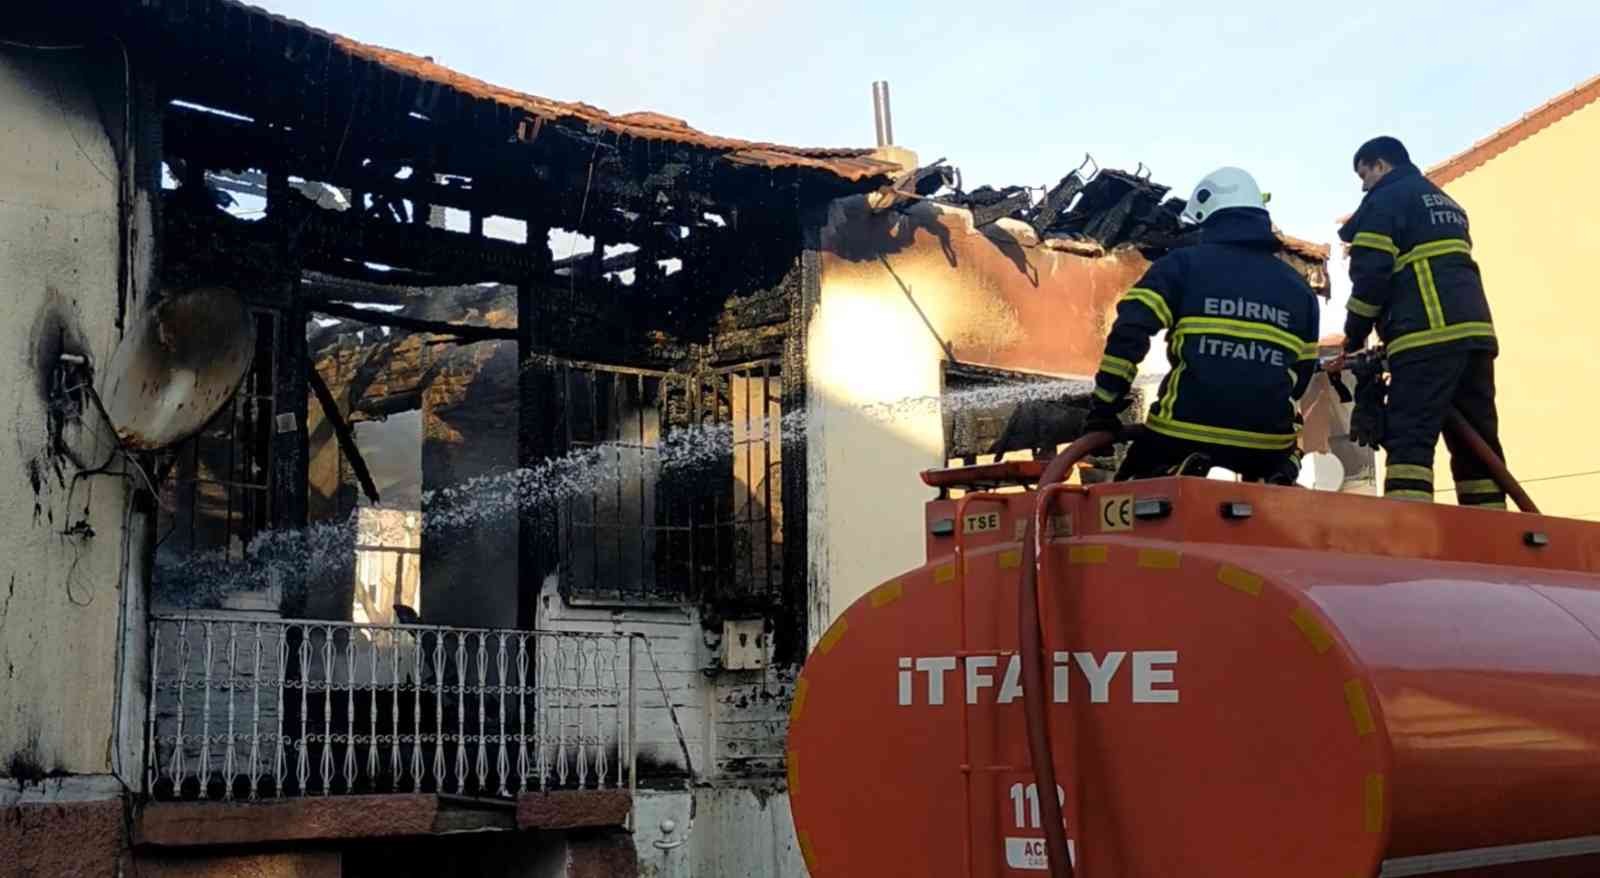 Tarihi ev yangında küle döndü #edirne